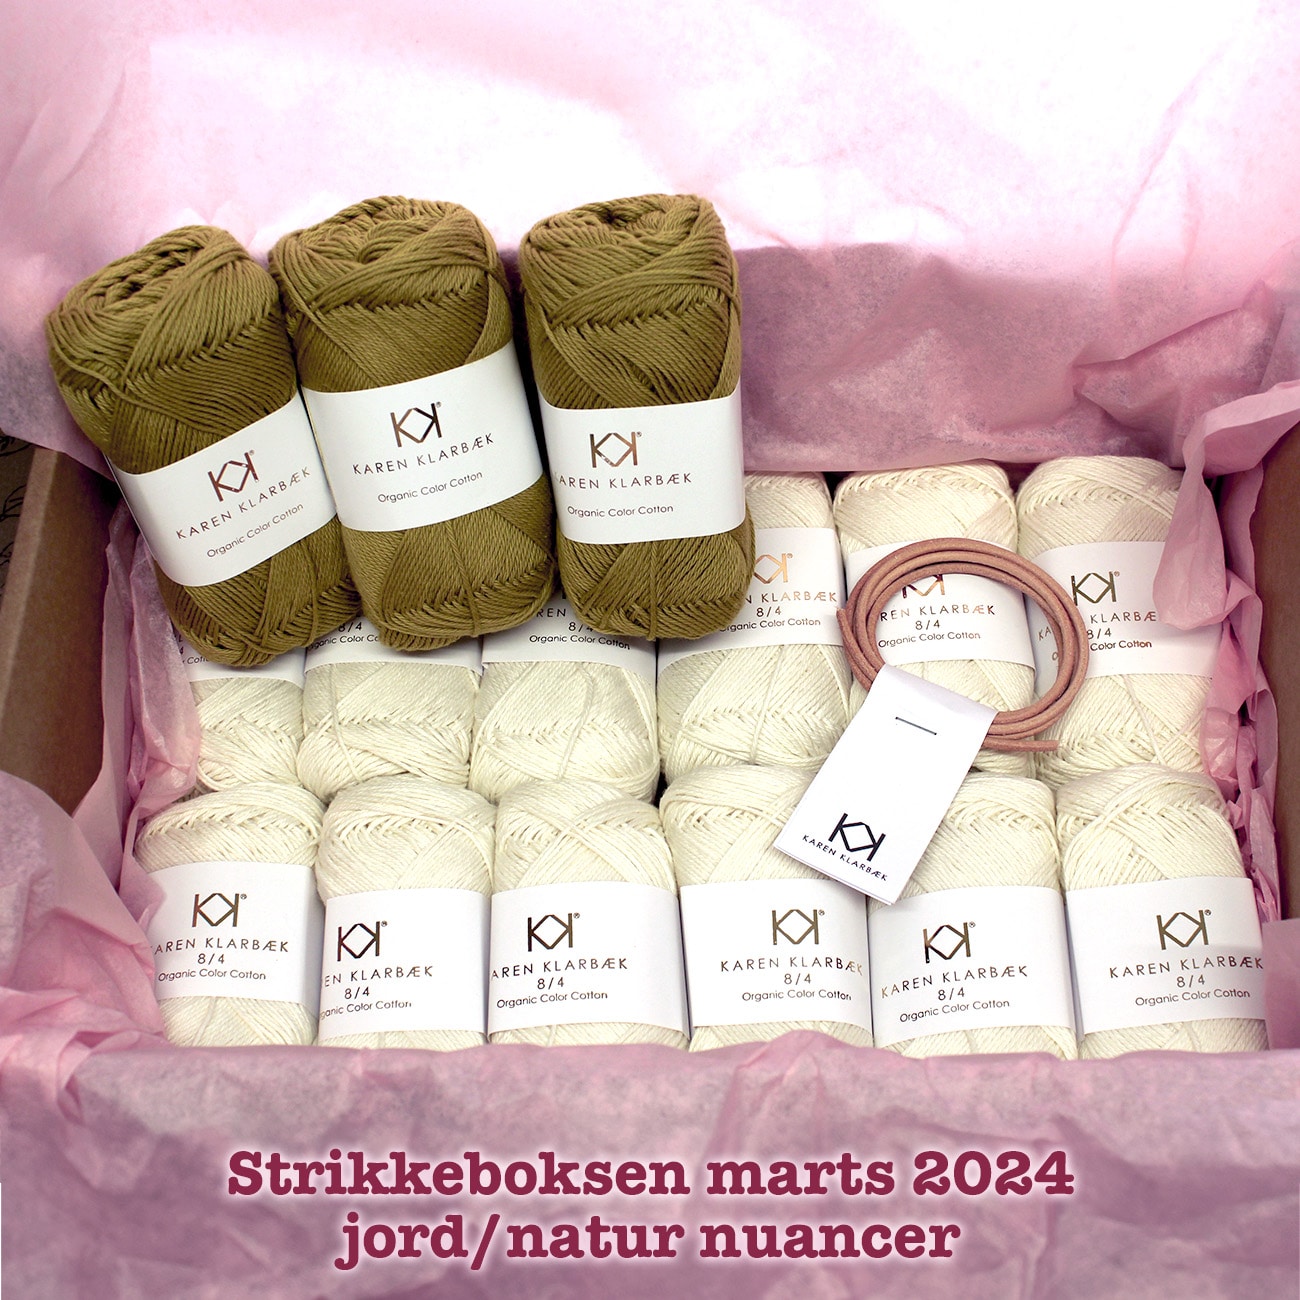 Strikkeboksen standard marts 2024 jord/natur nuancer Karen Klarbæk organic cotton 8/4